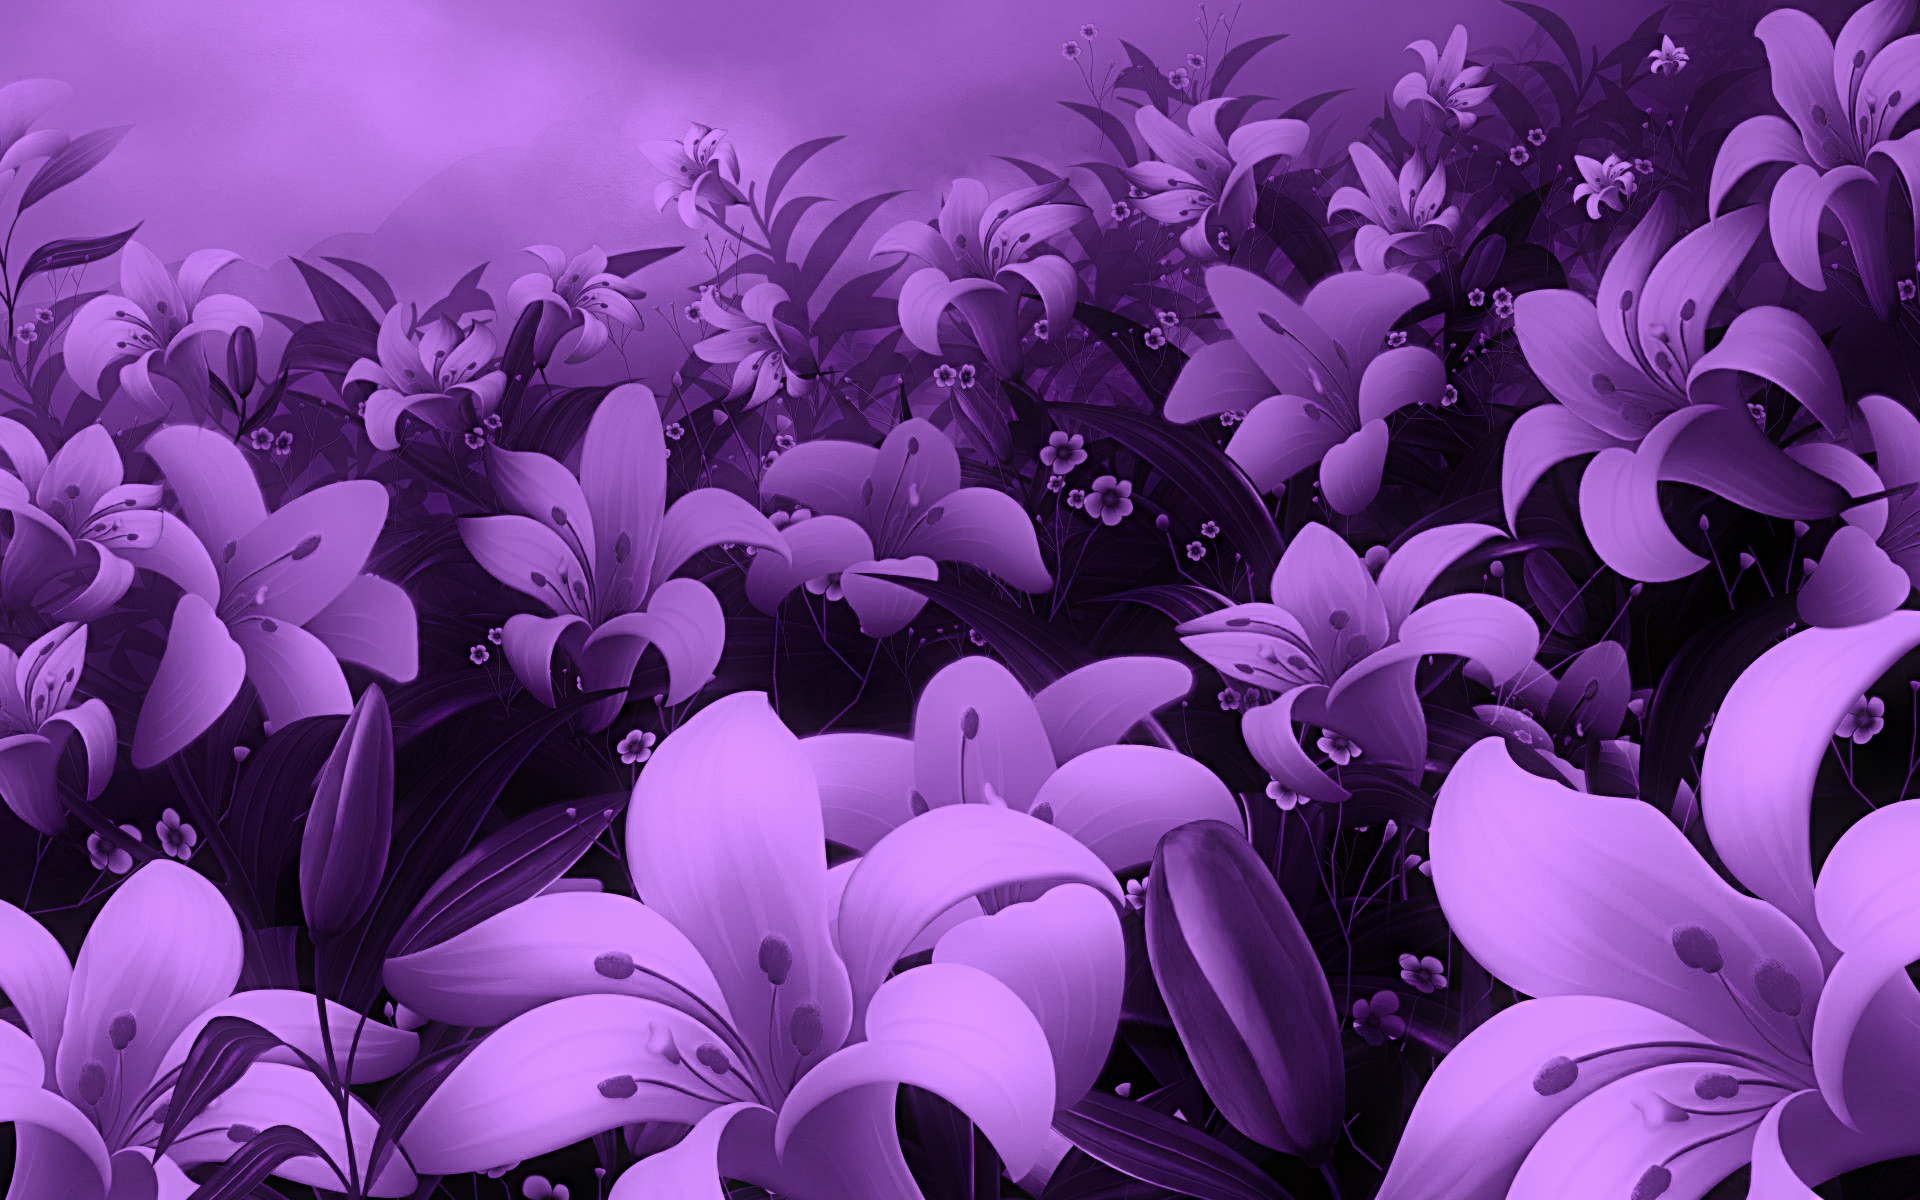 Hình nền hoa tím: Mang sắc hoa tím lãng mạn đến cho màn hình của bạn. Những hình nền hoa tím đẹp và rực rỡ sẽ làm cho màn hình trở nên sống động hơn, khiến bạn cảm thấy vui vẻ và tươi mới.